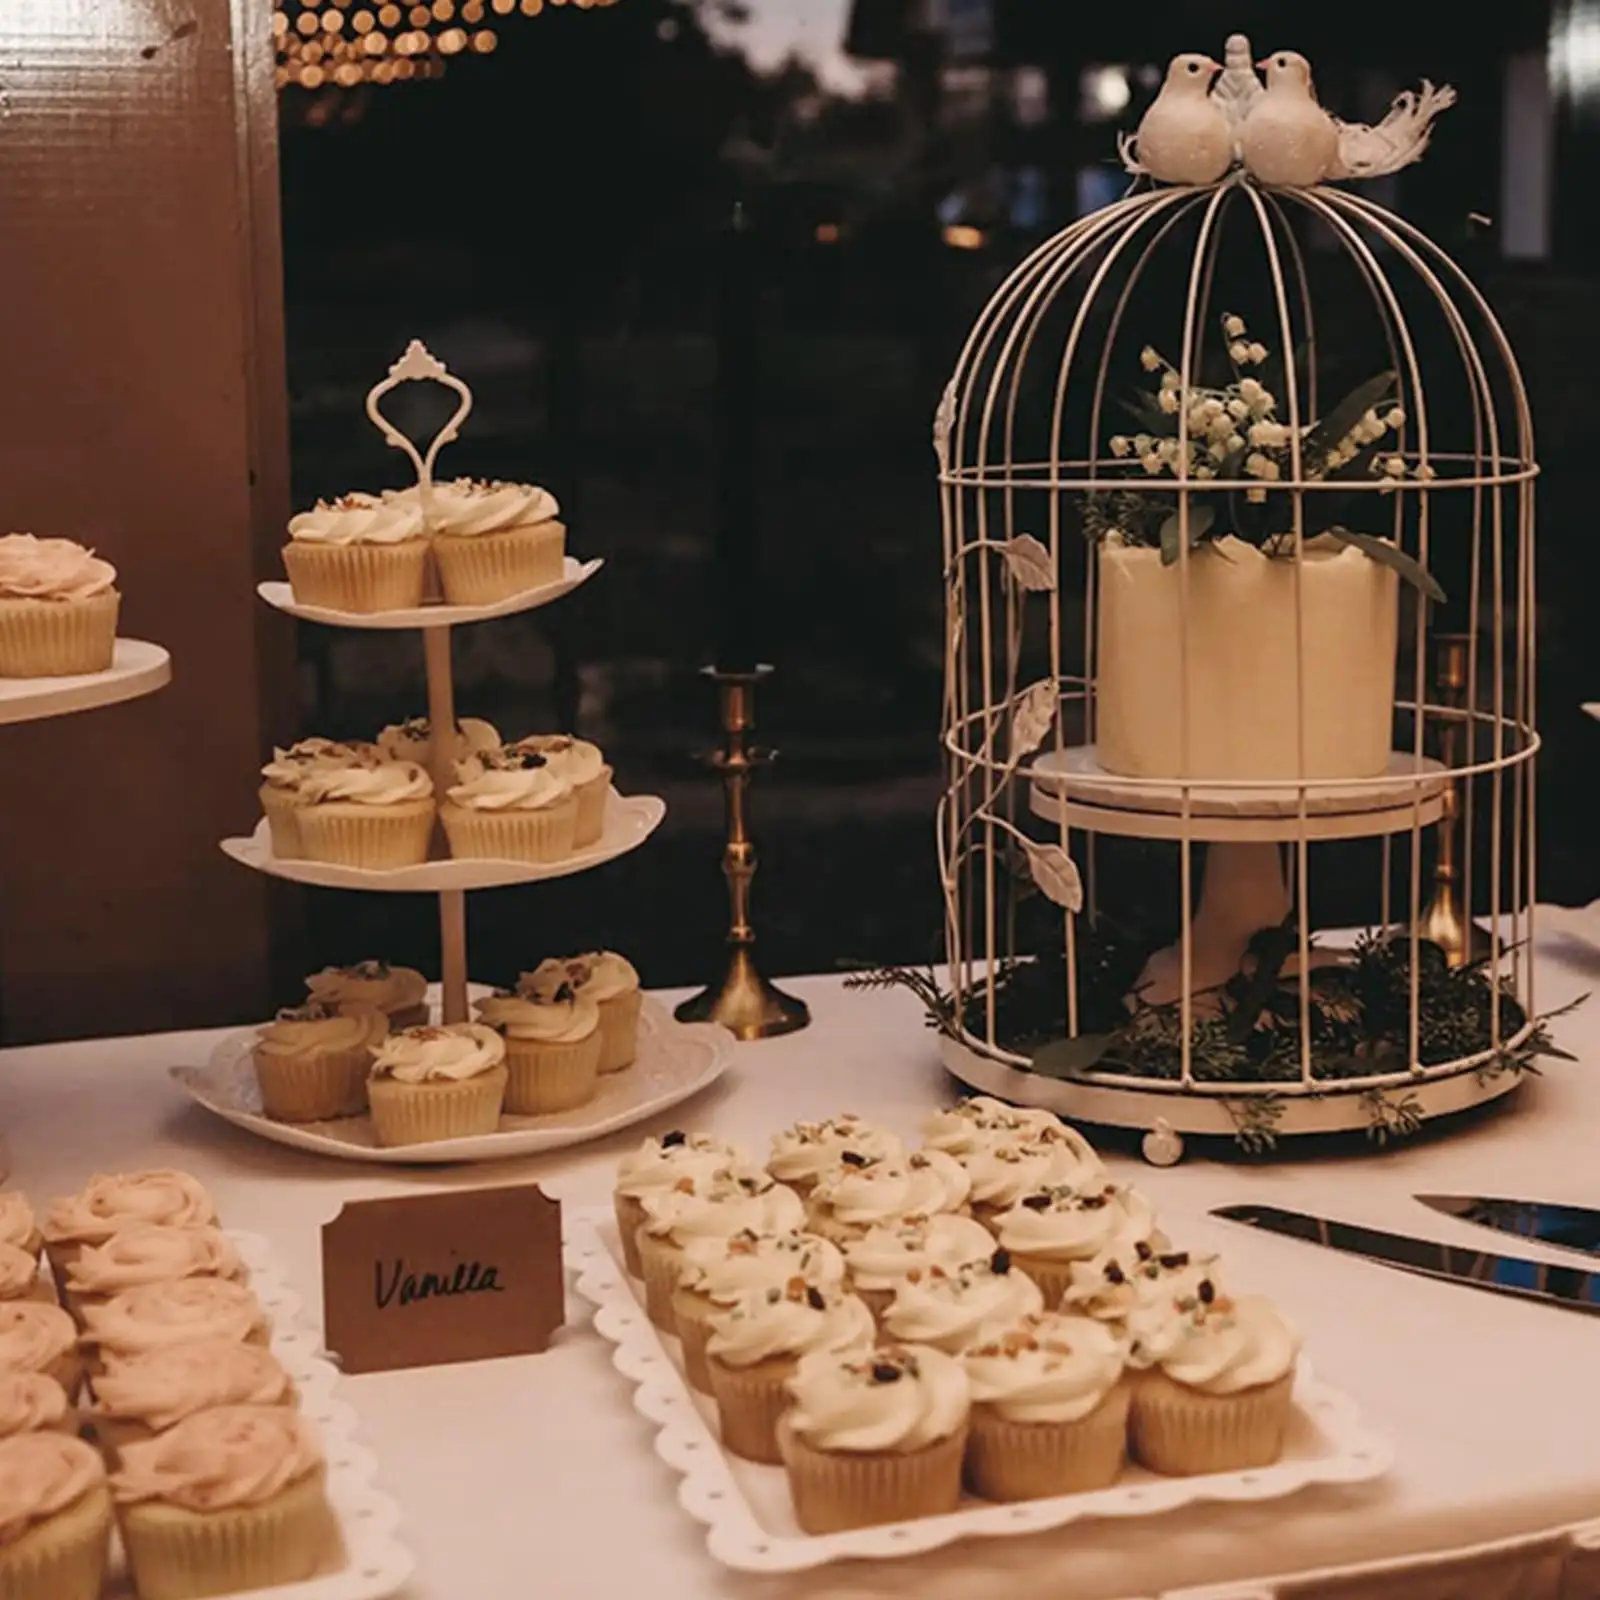 Soporte blanco para cupcakes, juego de exhibición de mesa de postres, incluye bandeja de postres y soporte para pasteles de 3 niveles para decoración del hogar de bodas